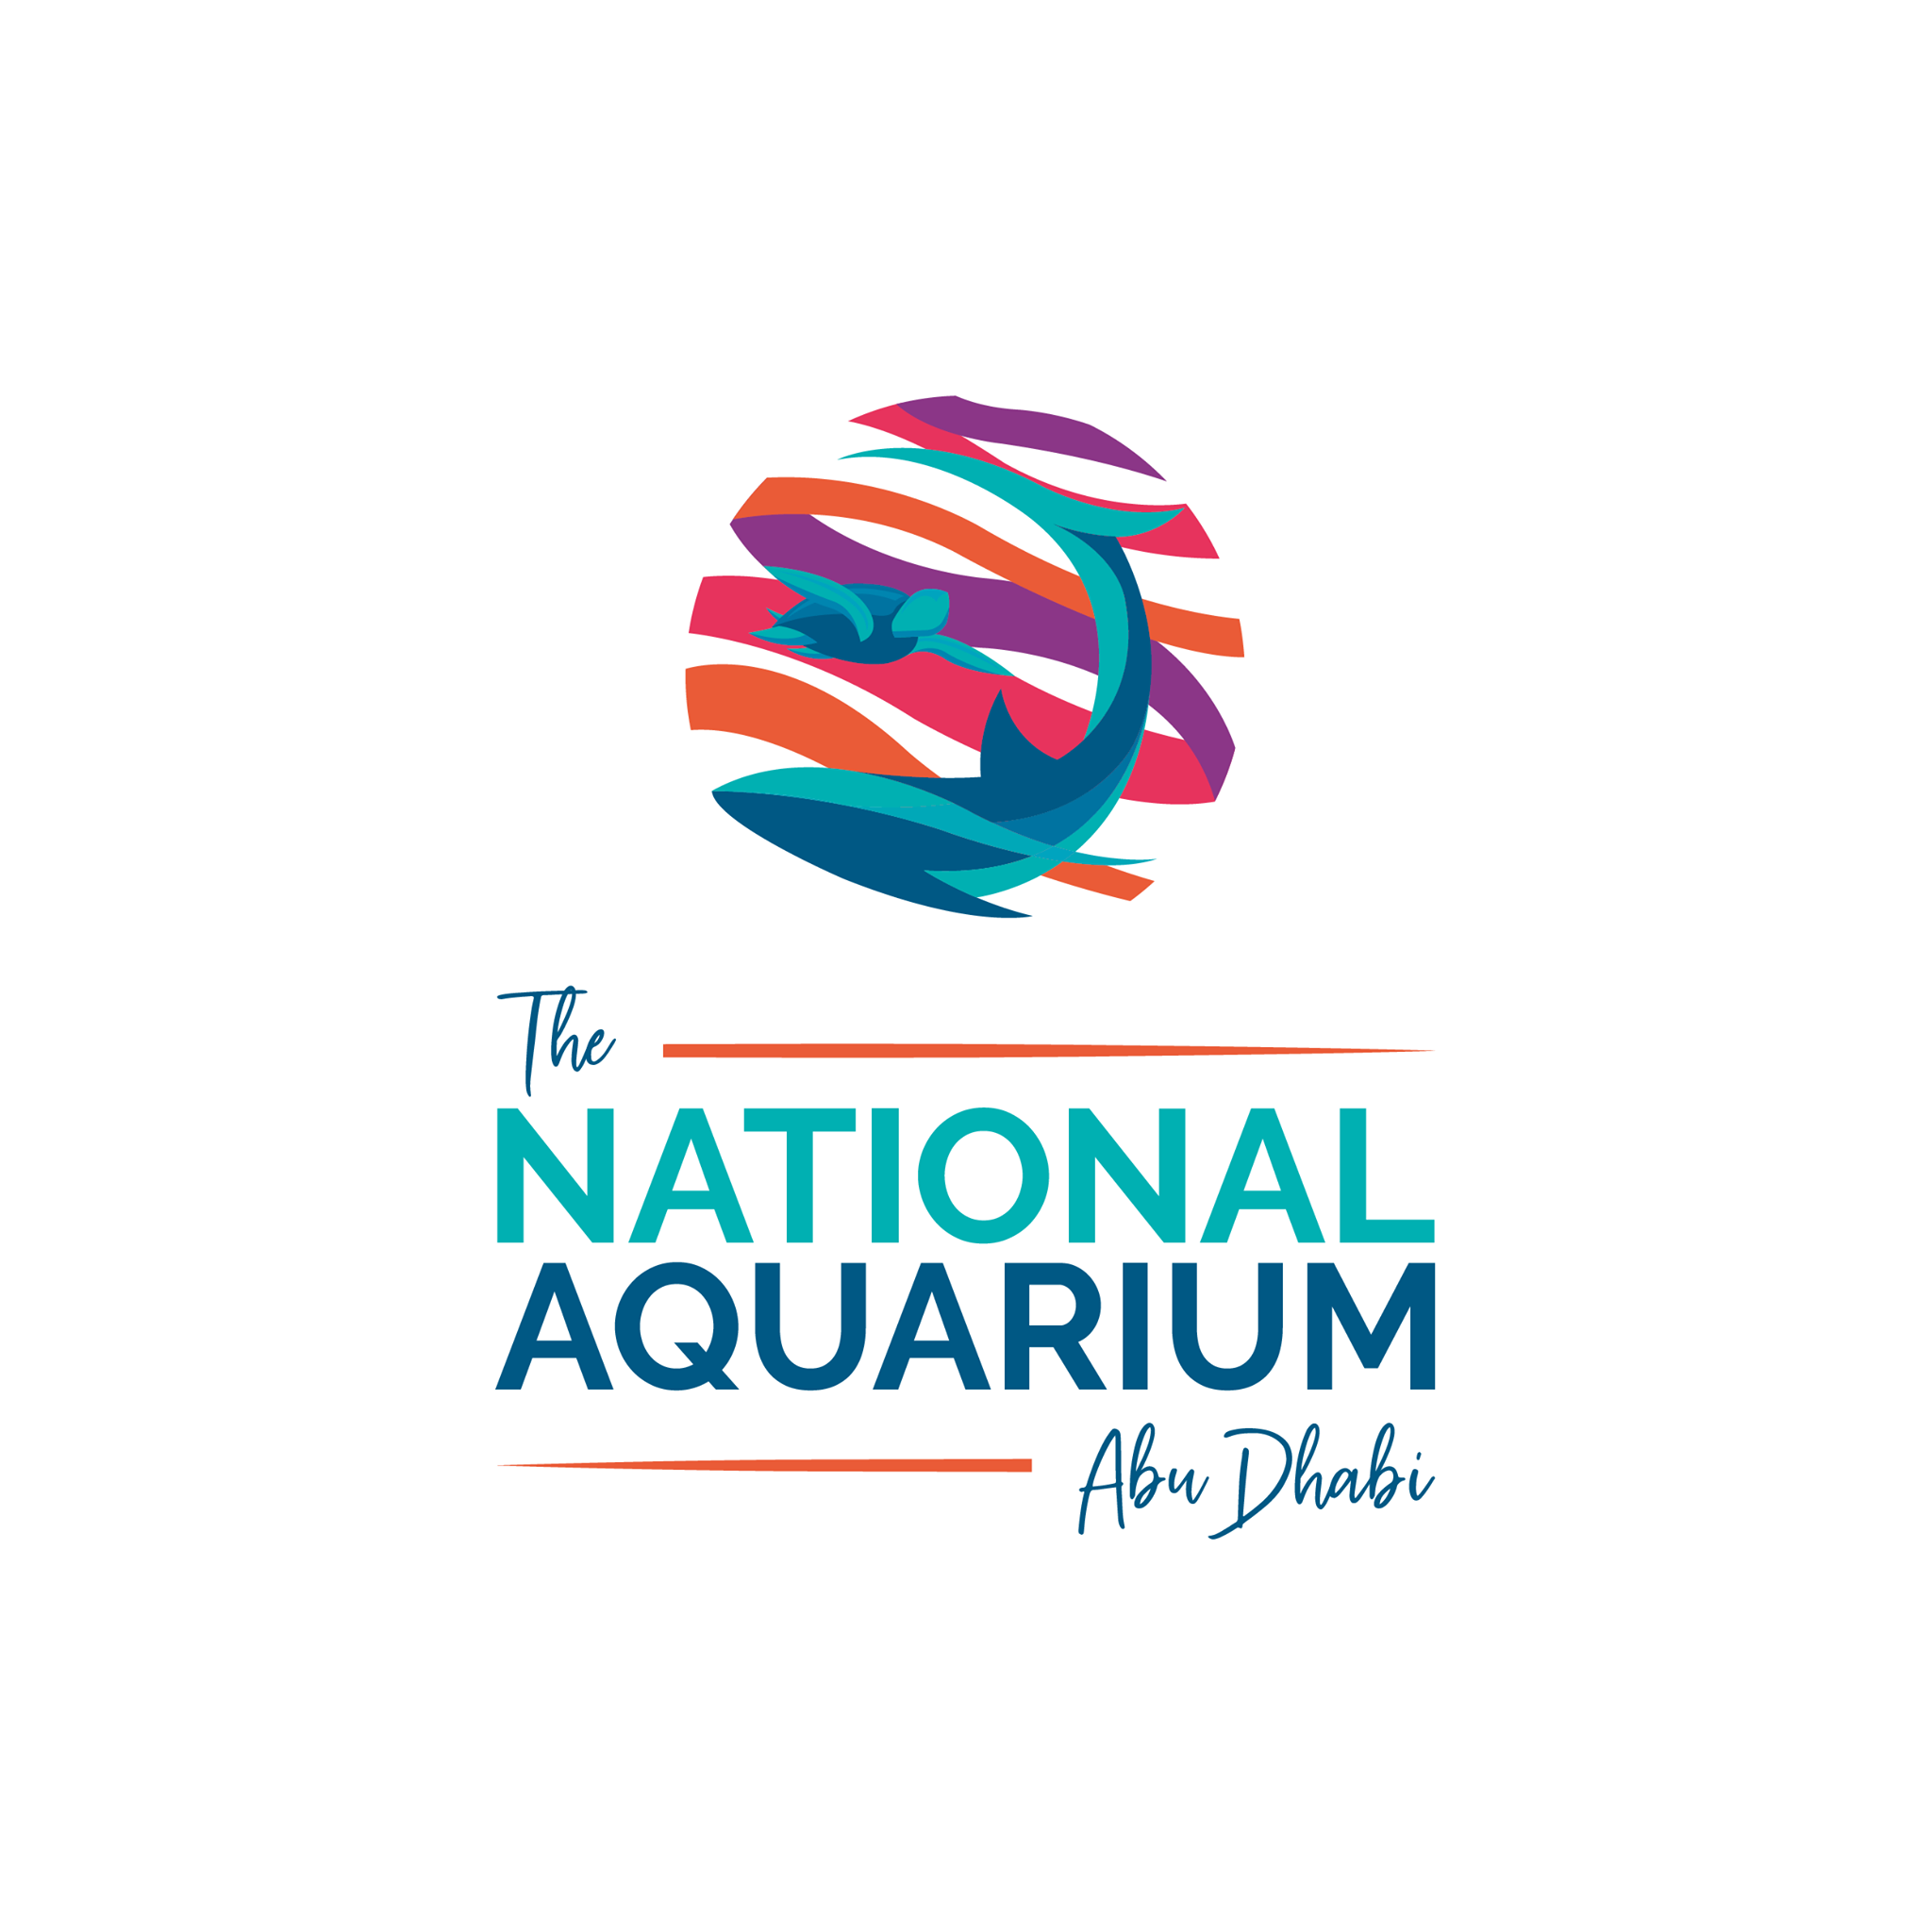 The National Aquarium Abu Dhabi - Largest Aquarium in the Middle East